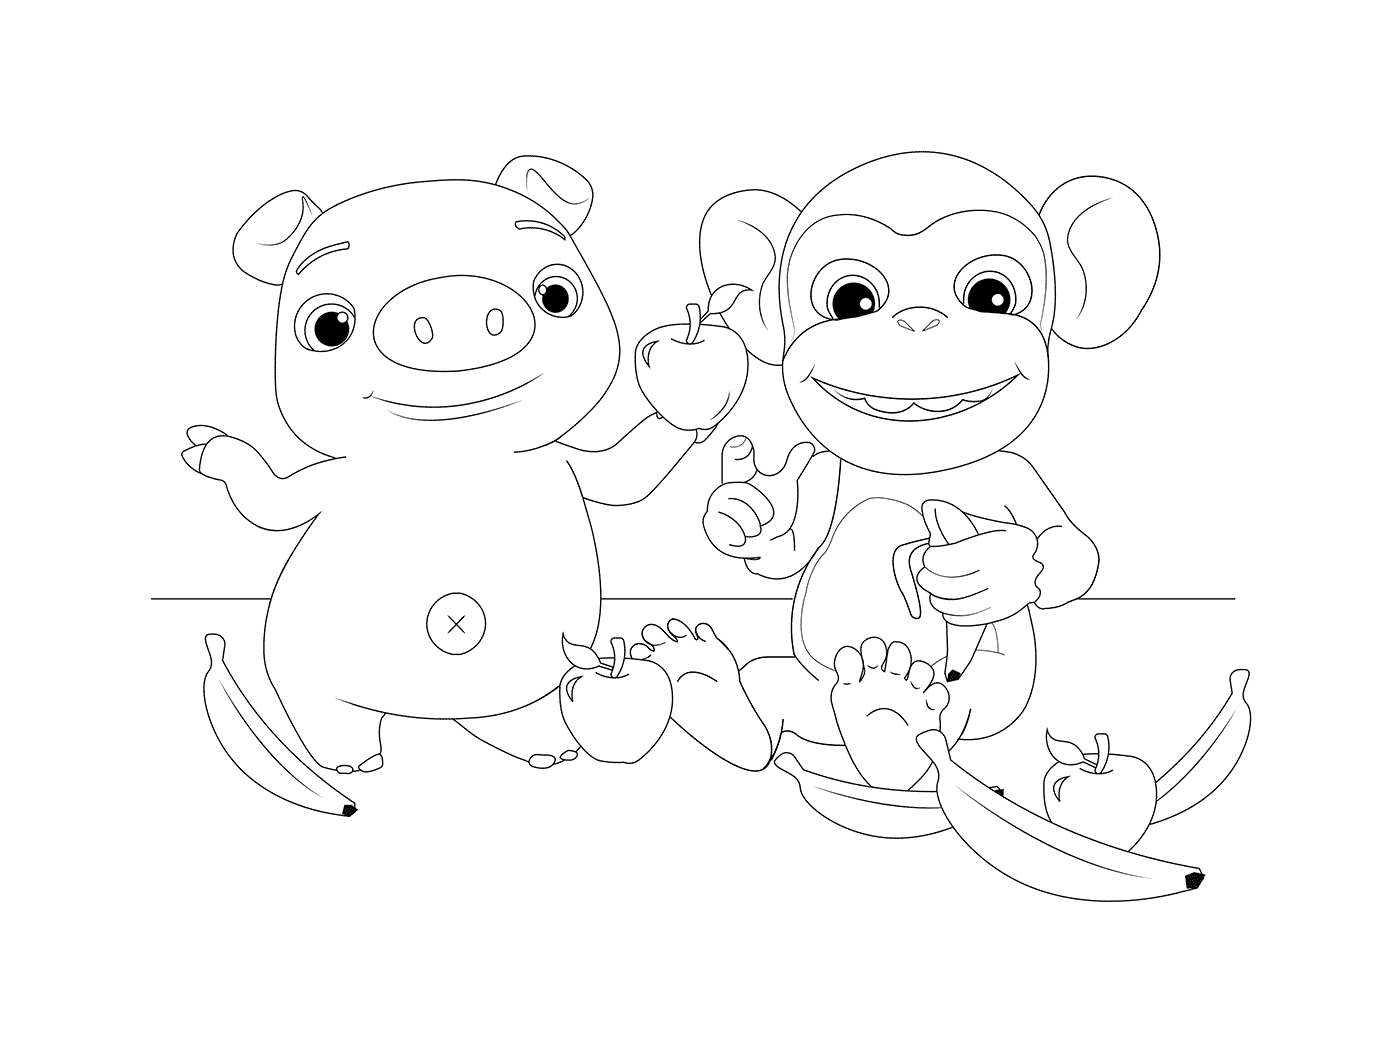  Mochi e Pepe: Um macaco e um porco engraçado 